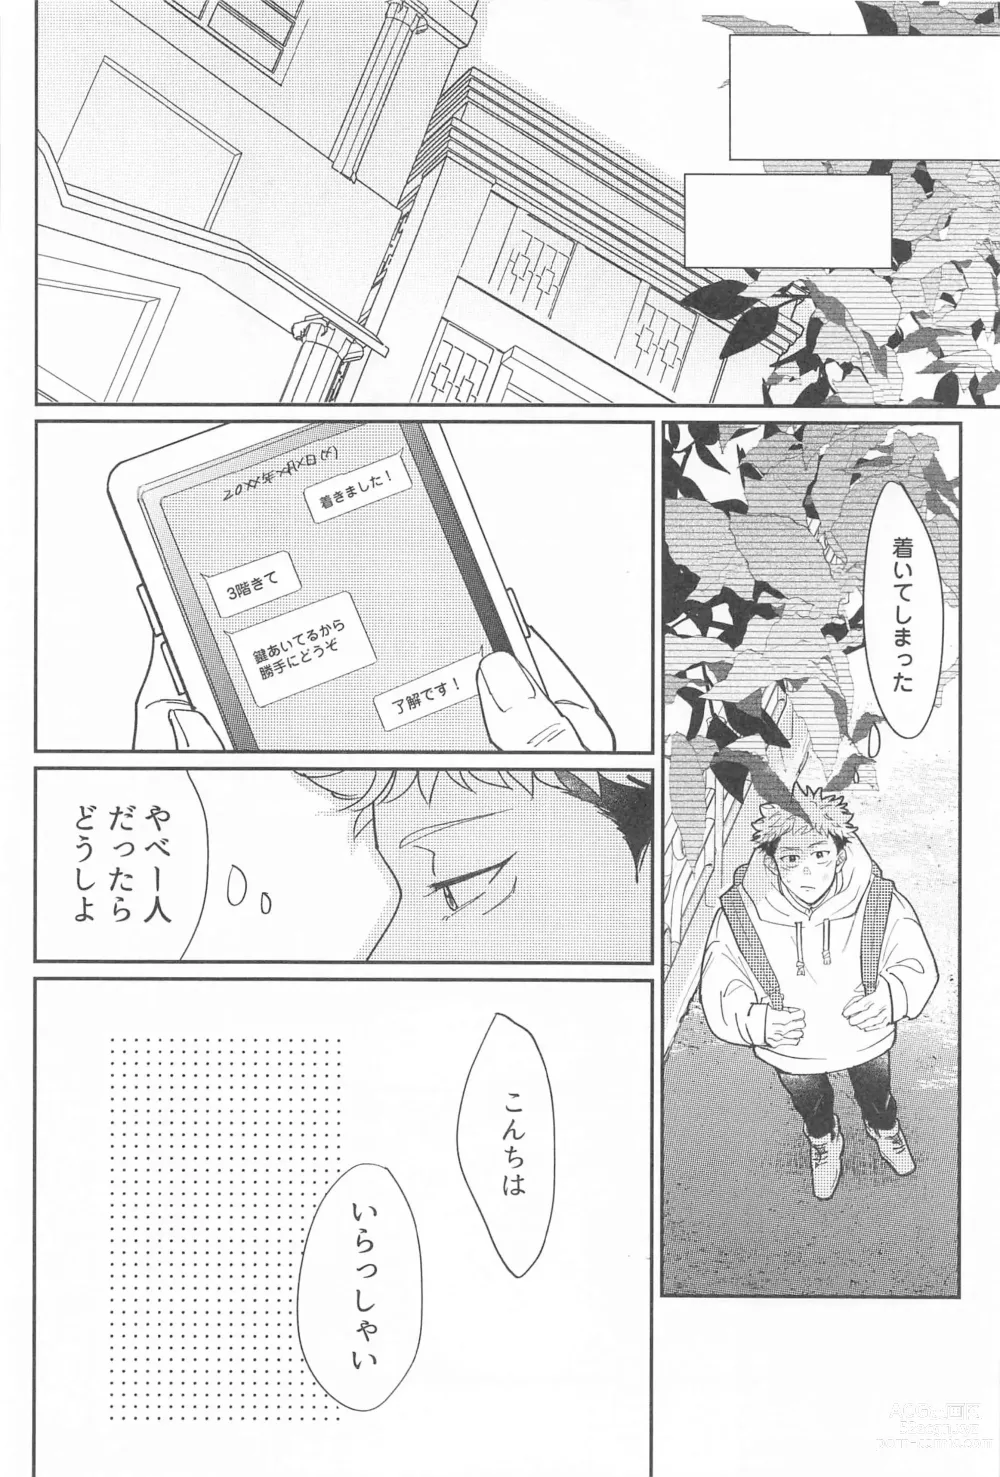 Page 7 of doujinshi Shikakukei no PENTAPRISM